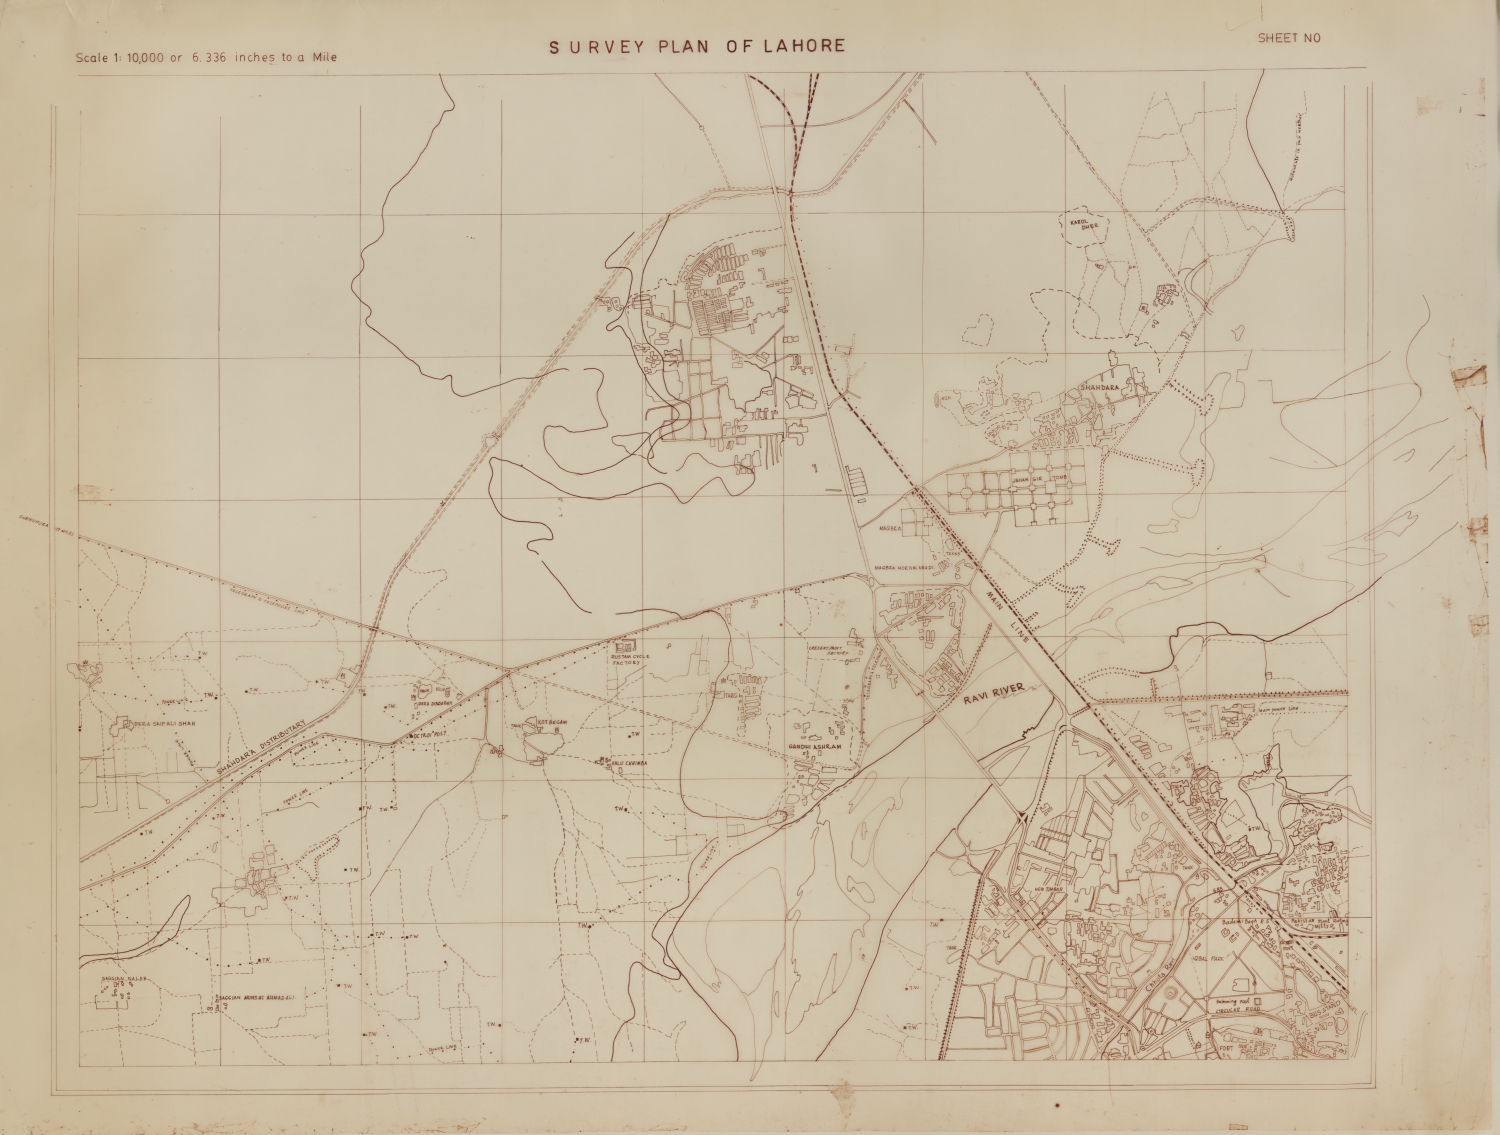 Survey Plan of Lahore [Unnumbered sheet]